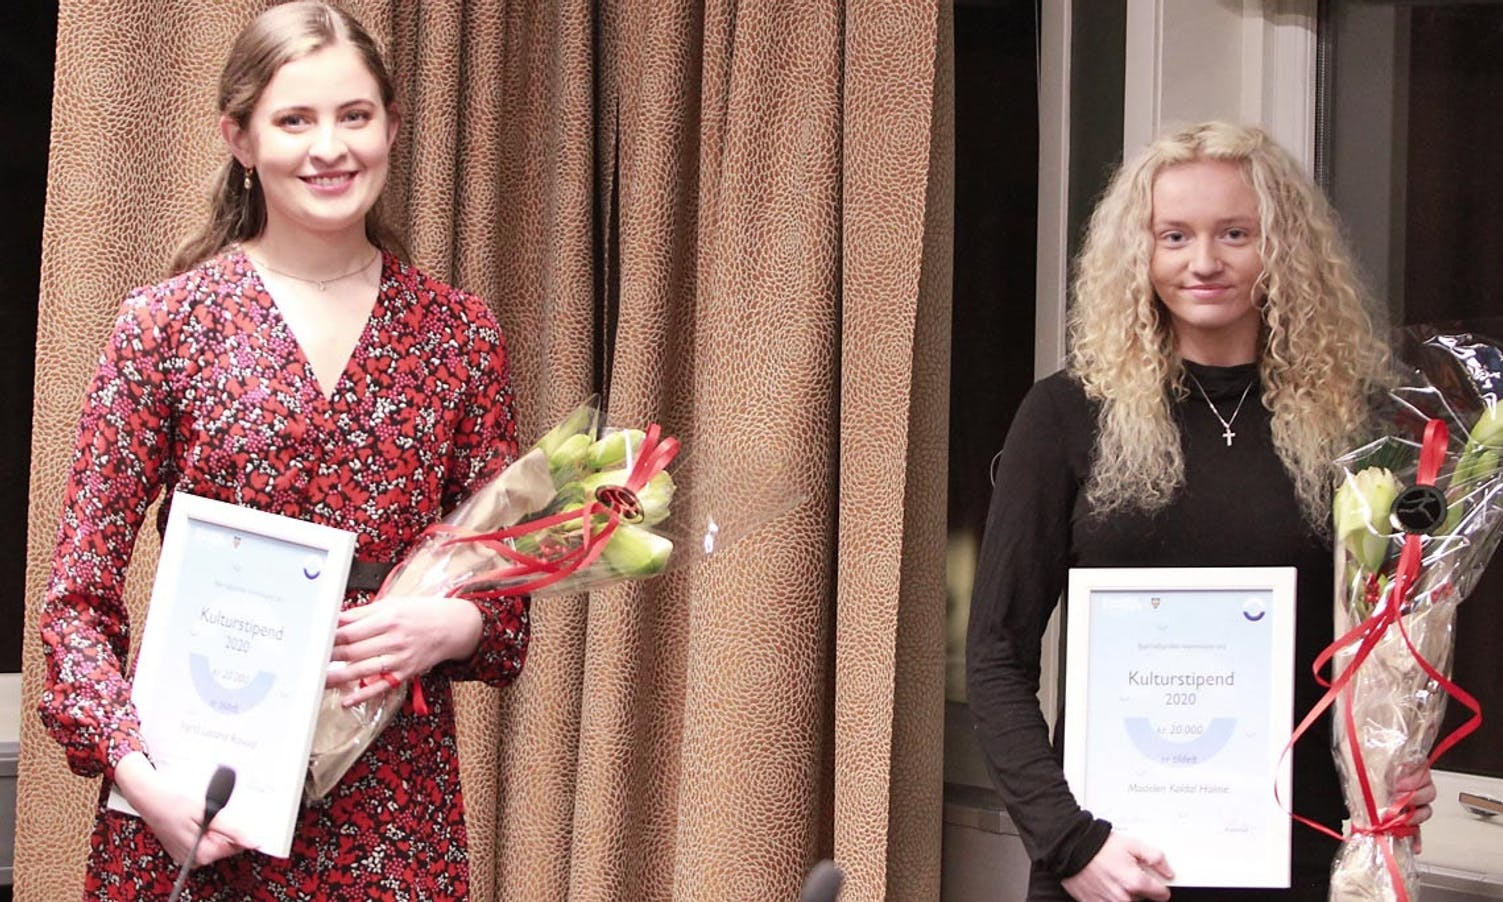 Ingrid og Madelen fekk årets kulturstipend